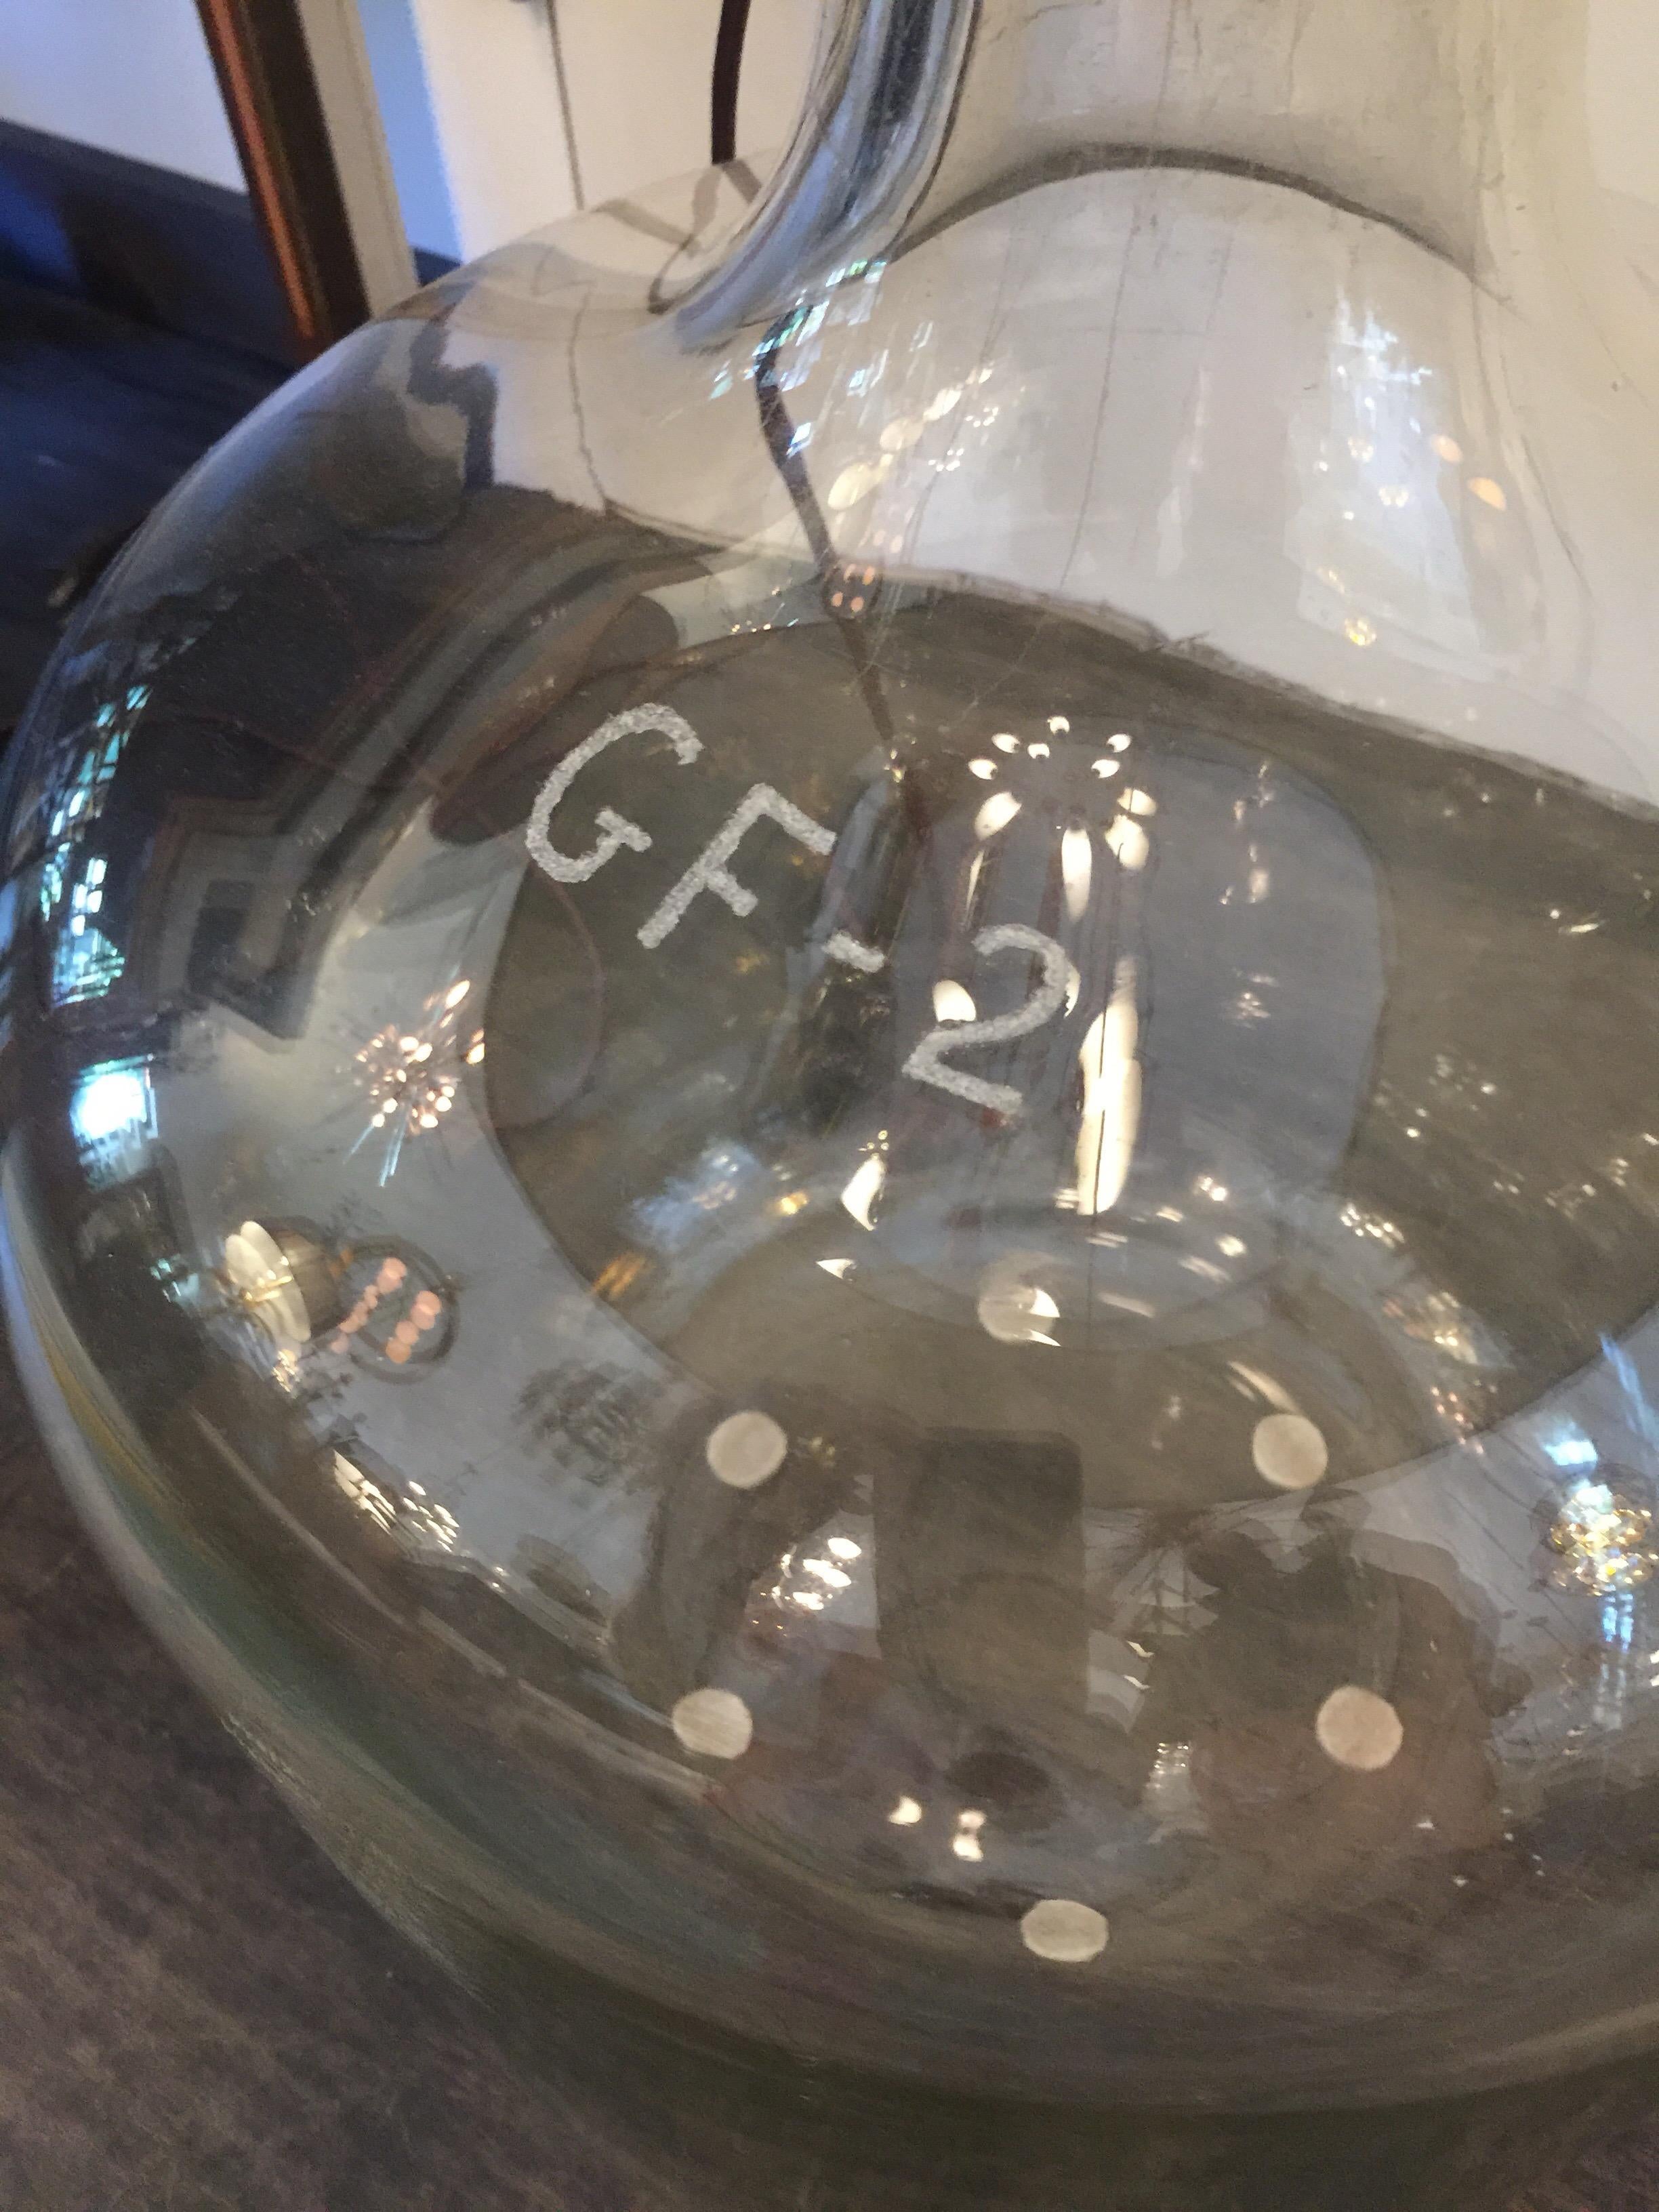 Il s'agit d'un très grand flacon de laboratoire vintage fabriqué par Pyrex (marqué sur le verre) avec une seule ampoule et un abat-jour tambour personnalisé à grande échelle.